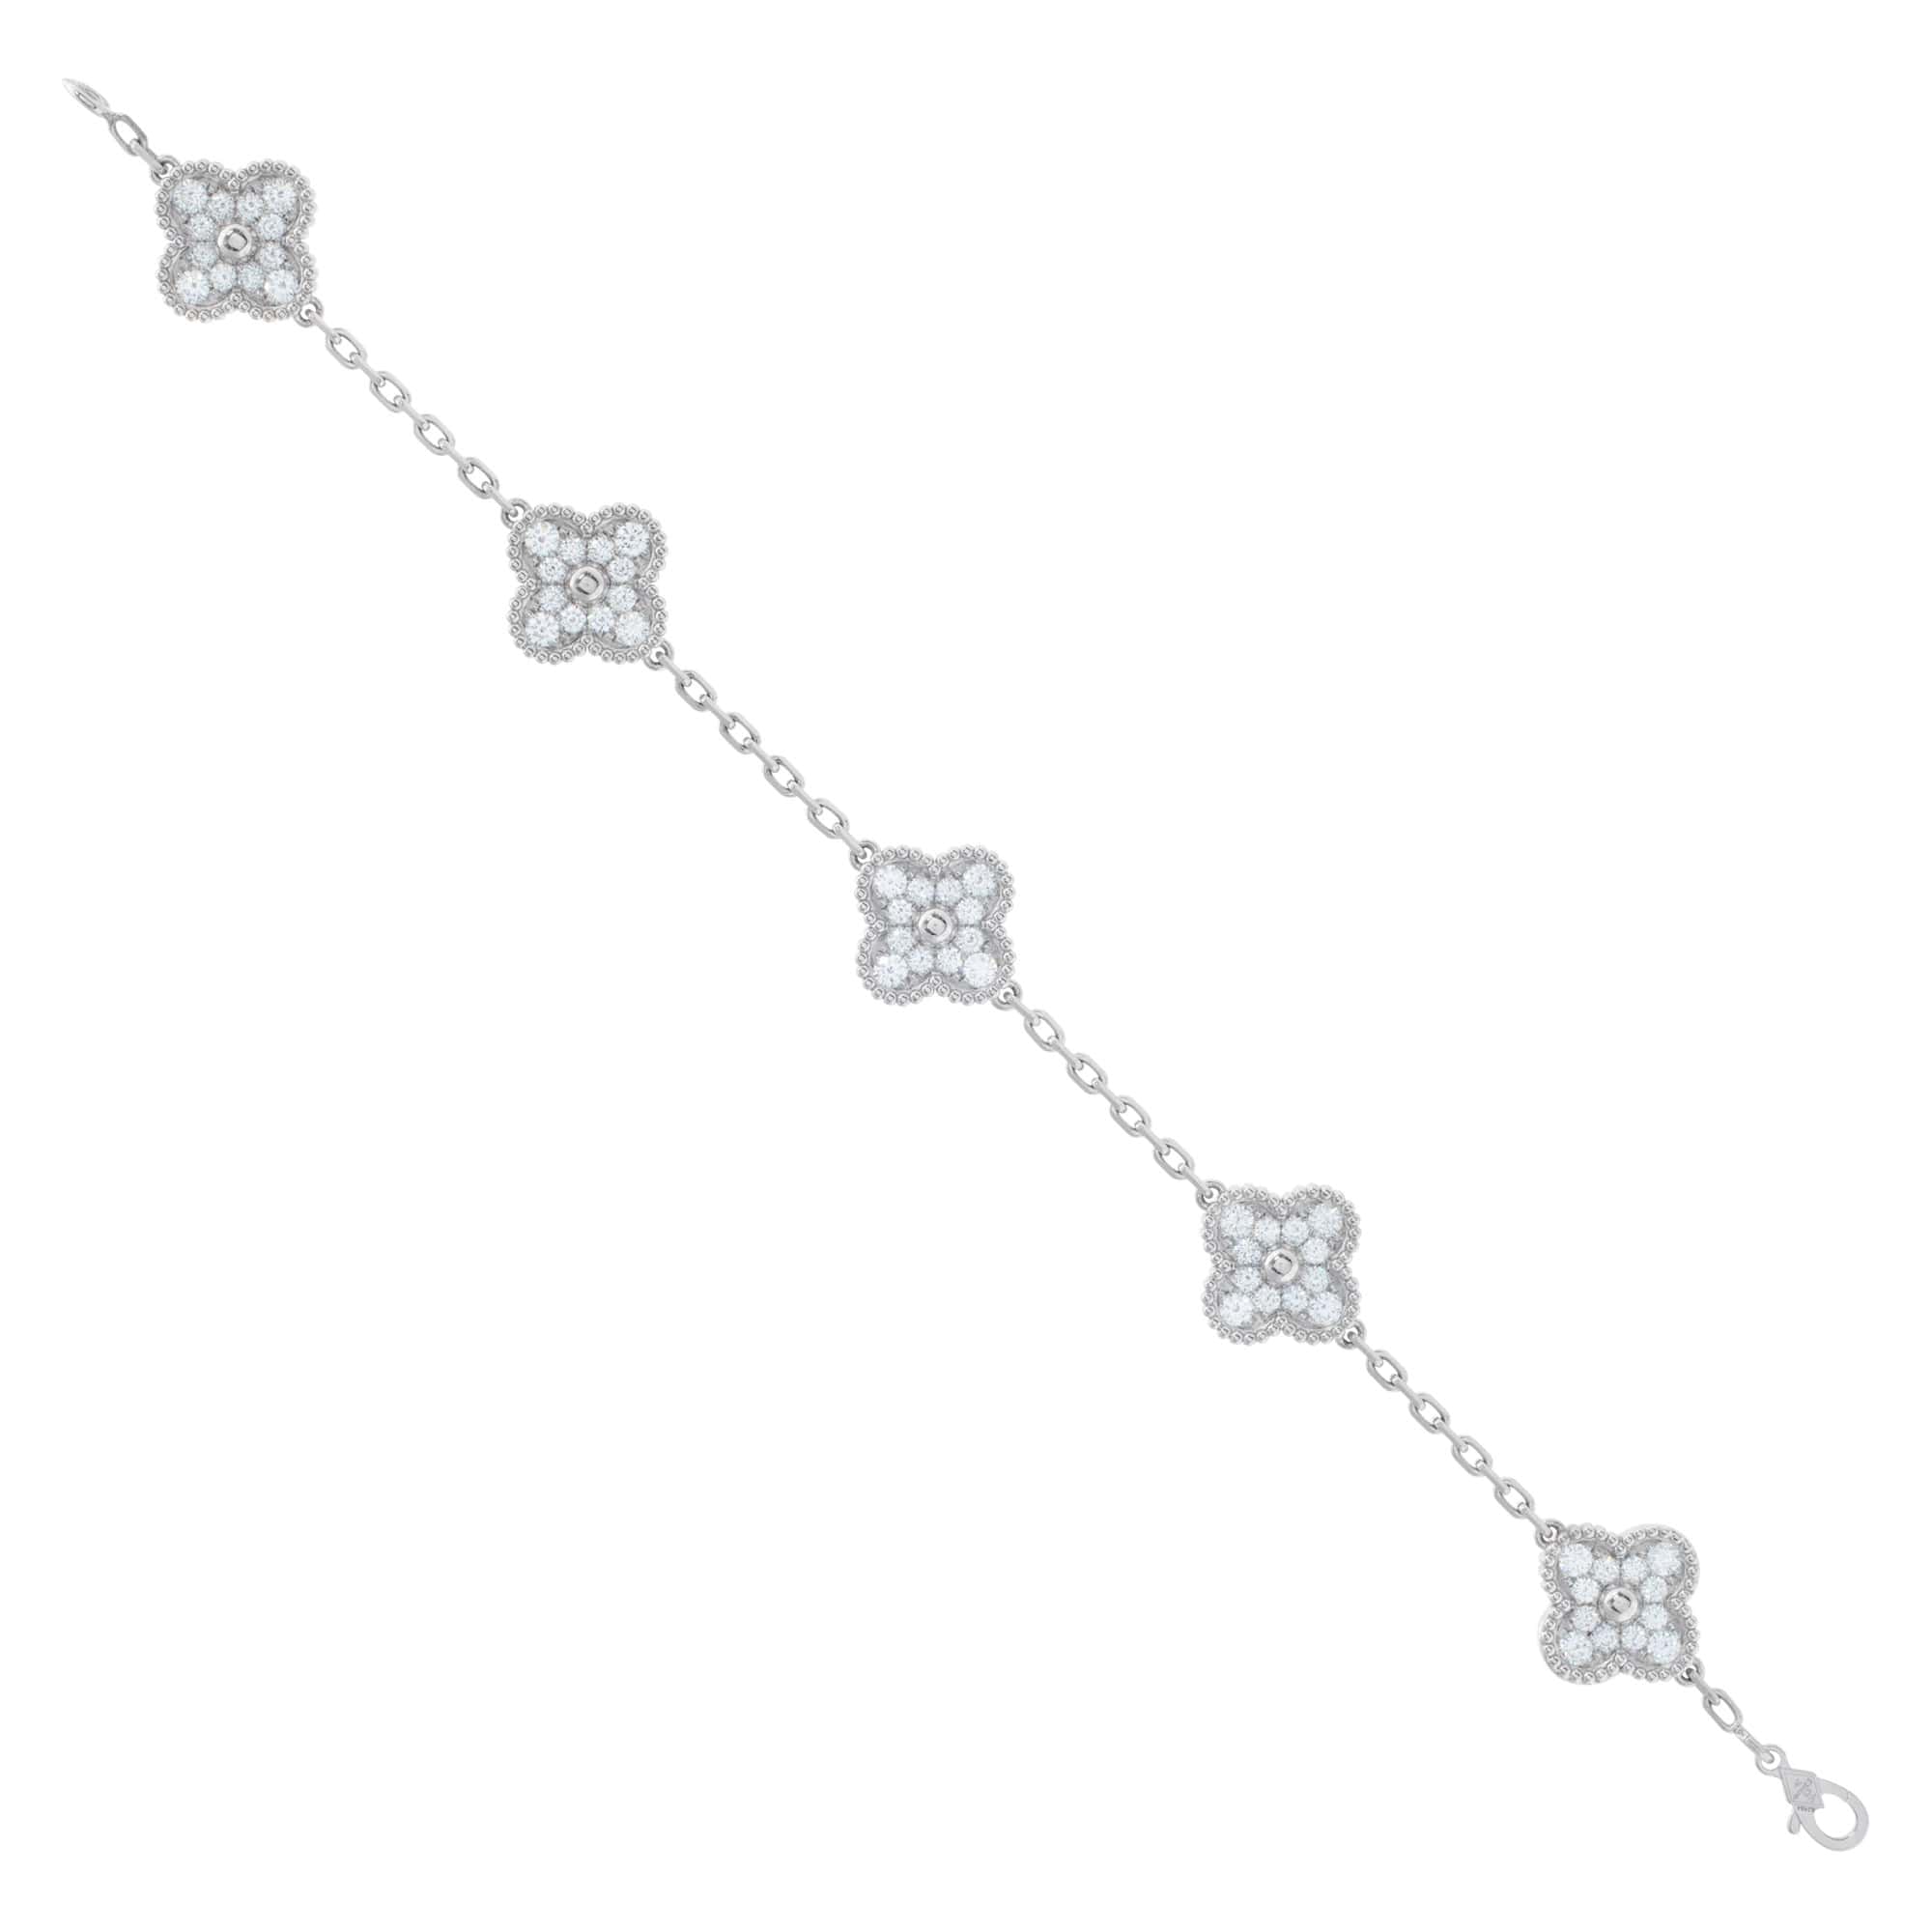 Van Cleef & Arpels Vintage Alhambra Bracelet, 5 Motifs - Rhodium-Plated 18K  White Gold Link, Bracelets - VAC30554